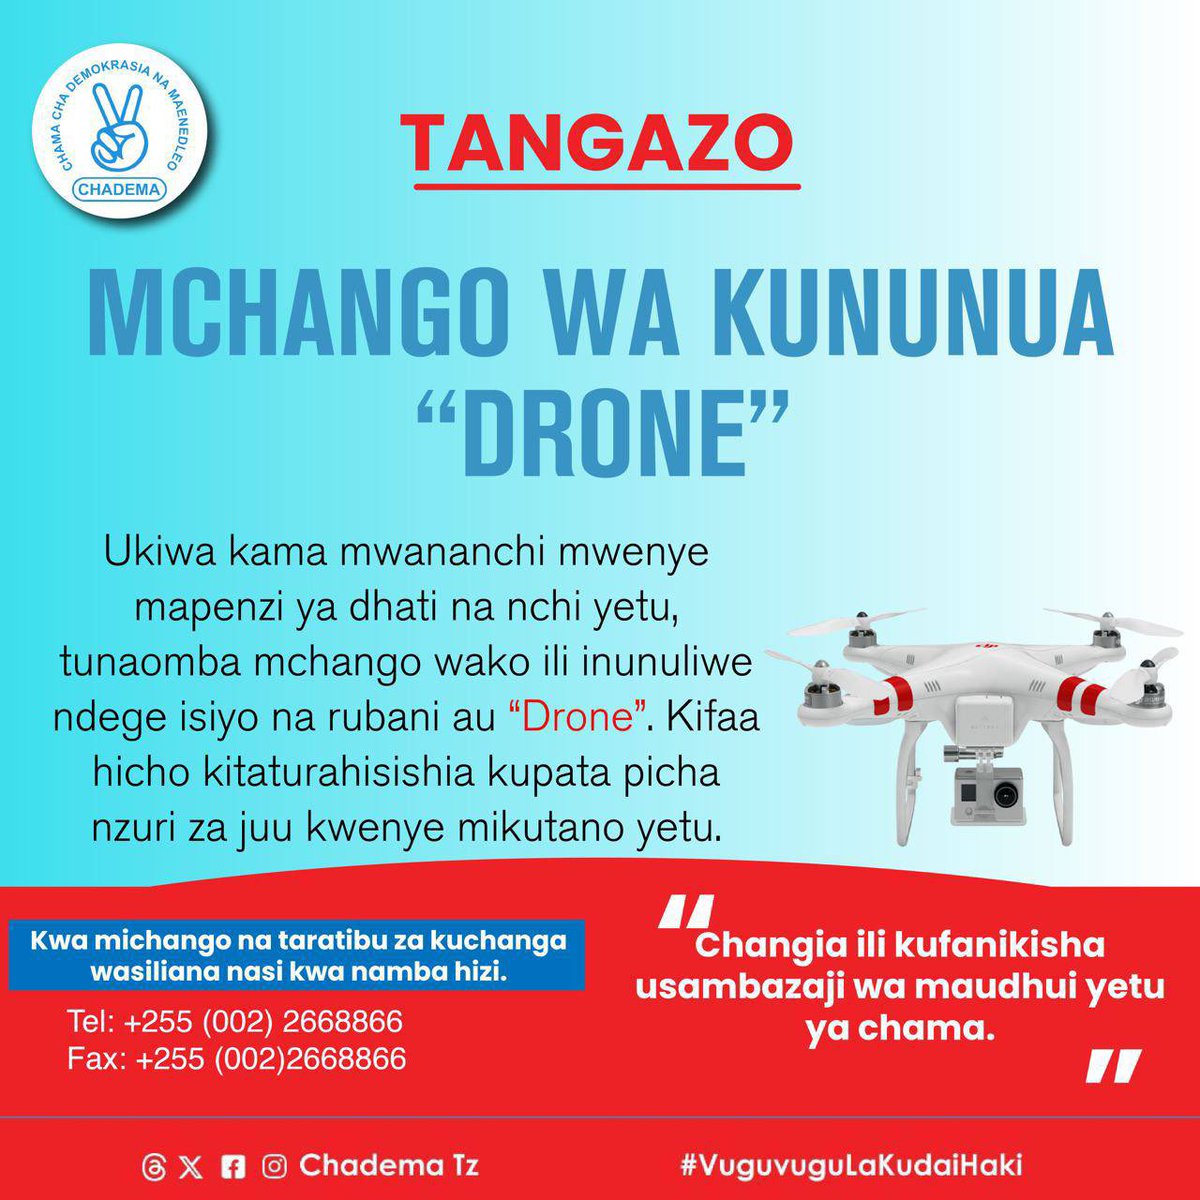 Afadhali chama kimeamua tuchange tununue drone sasa.